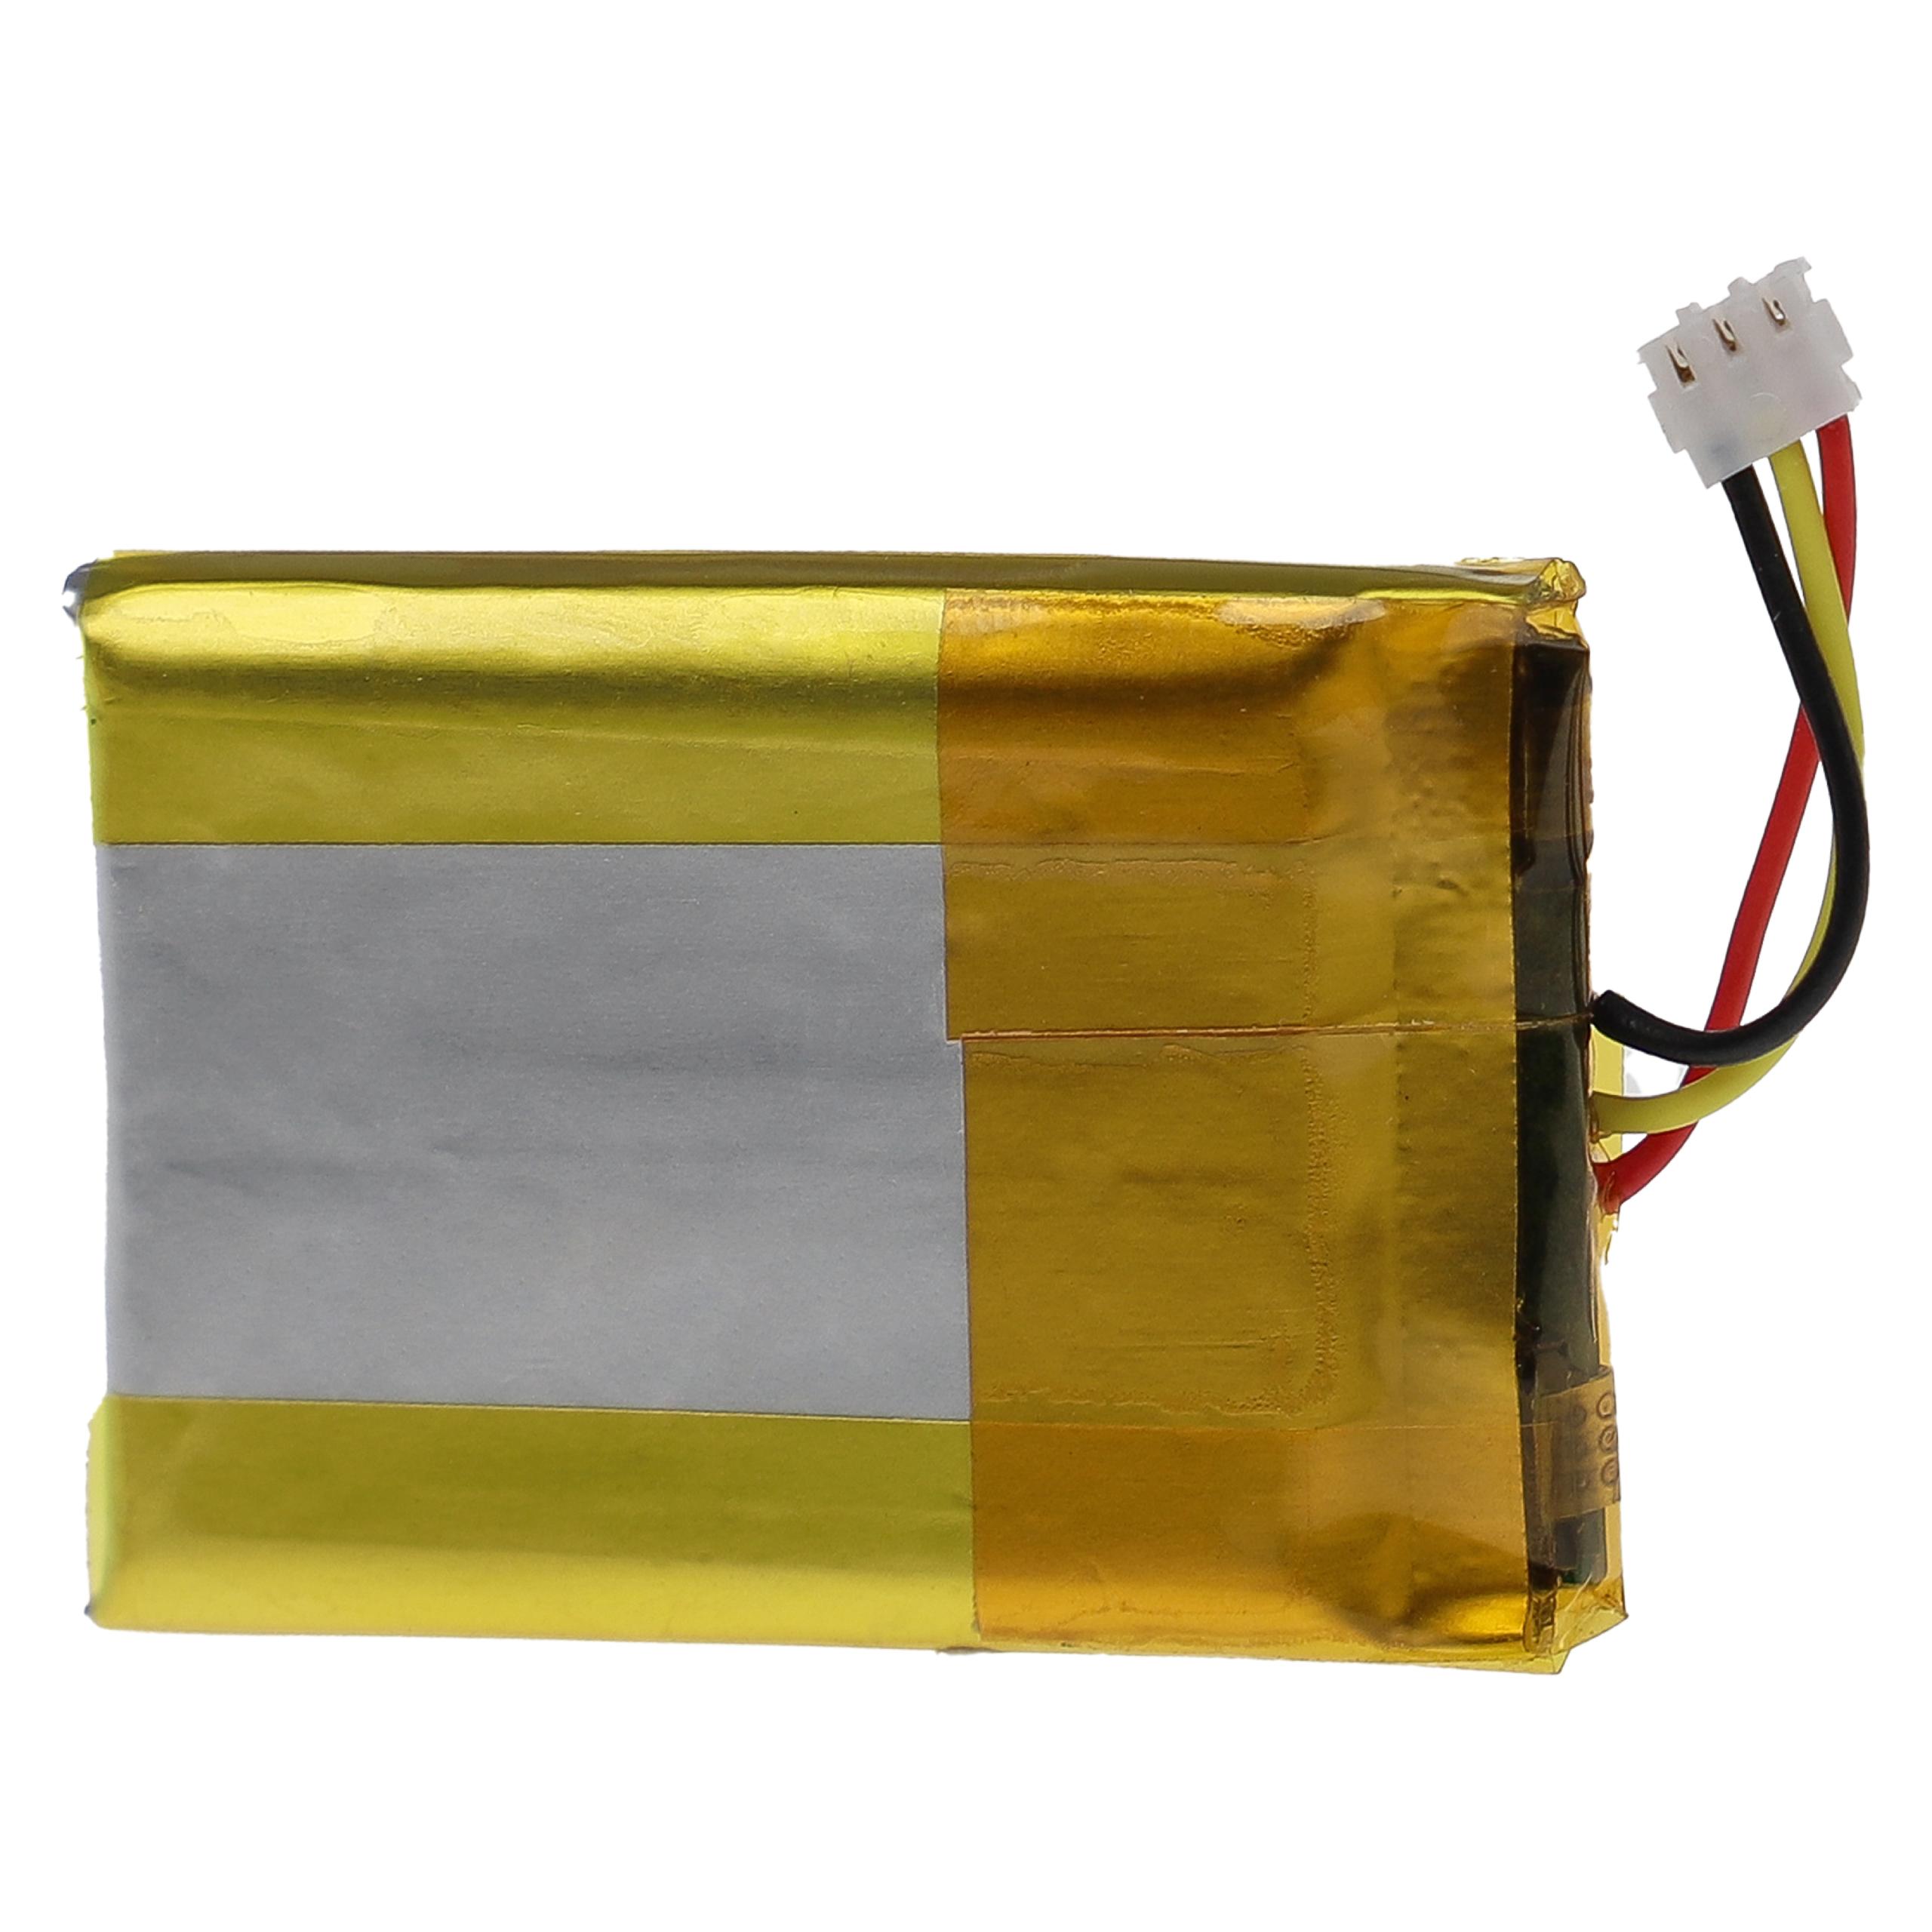 Batterie remplace Phonak IP462539 pour appareil médical - 300mAh 3,7V Li-polymère